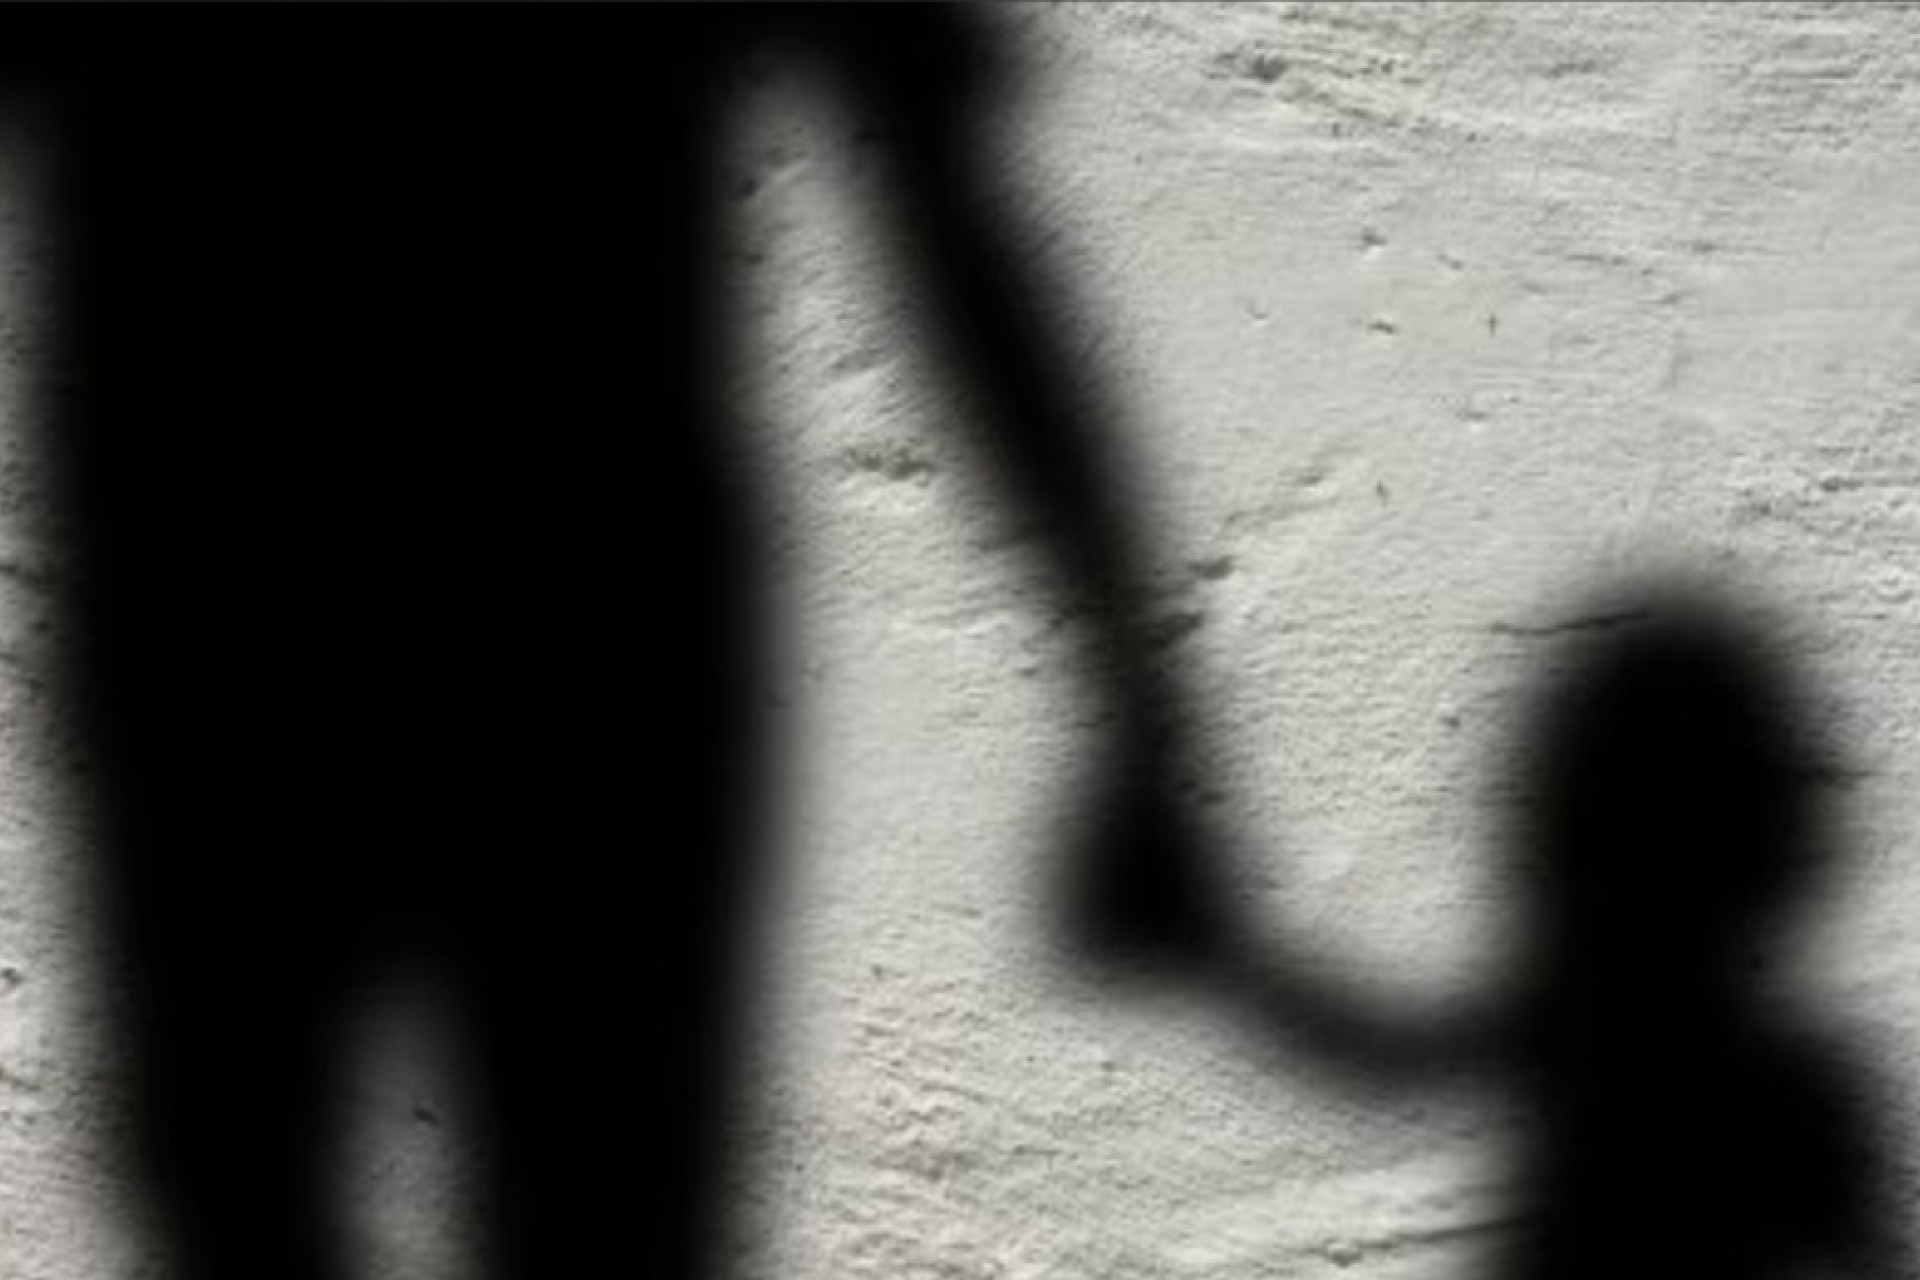 Avô é preso em flagrante por estupro de neta de 11 anos no Paraná